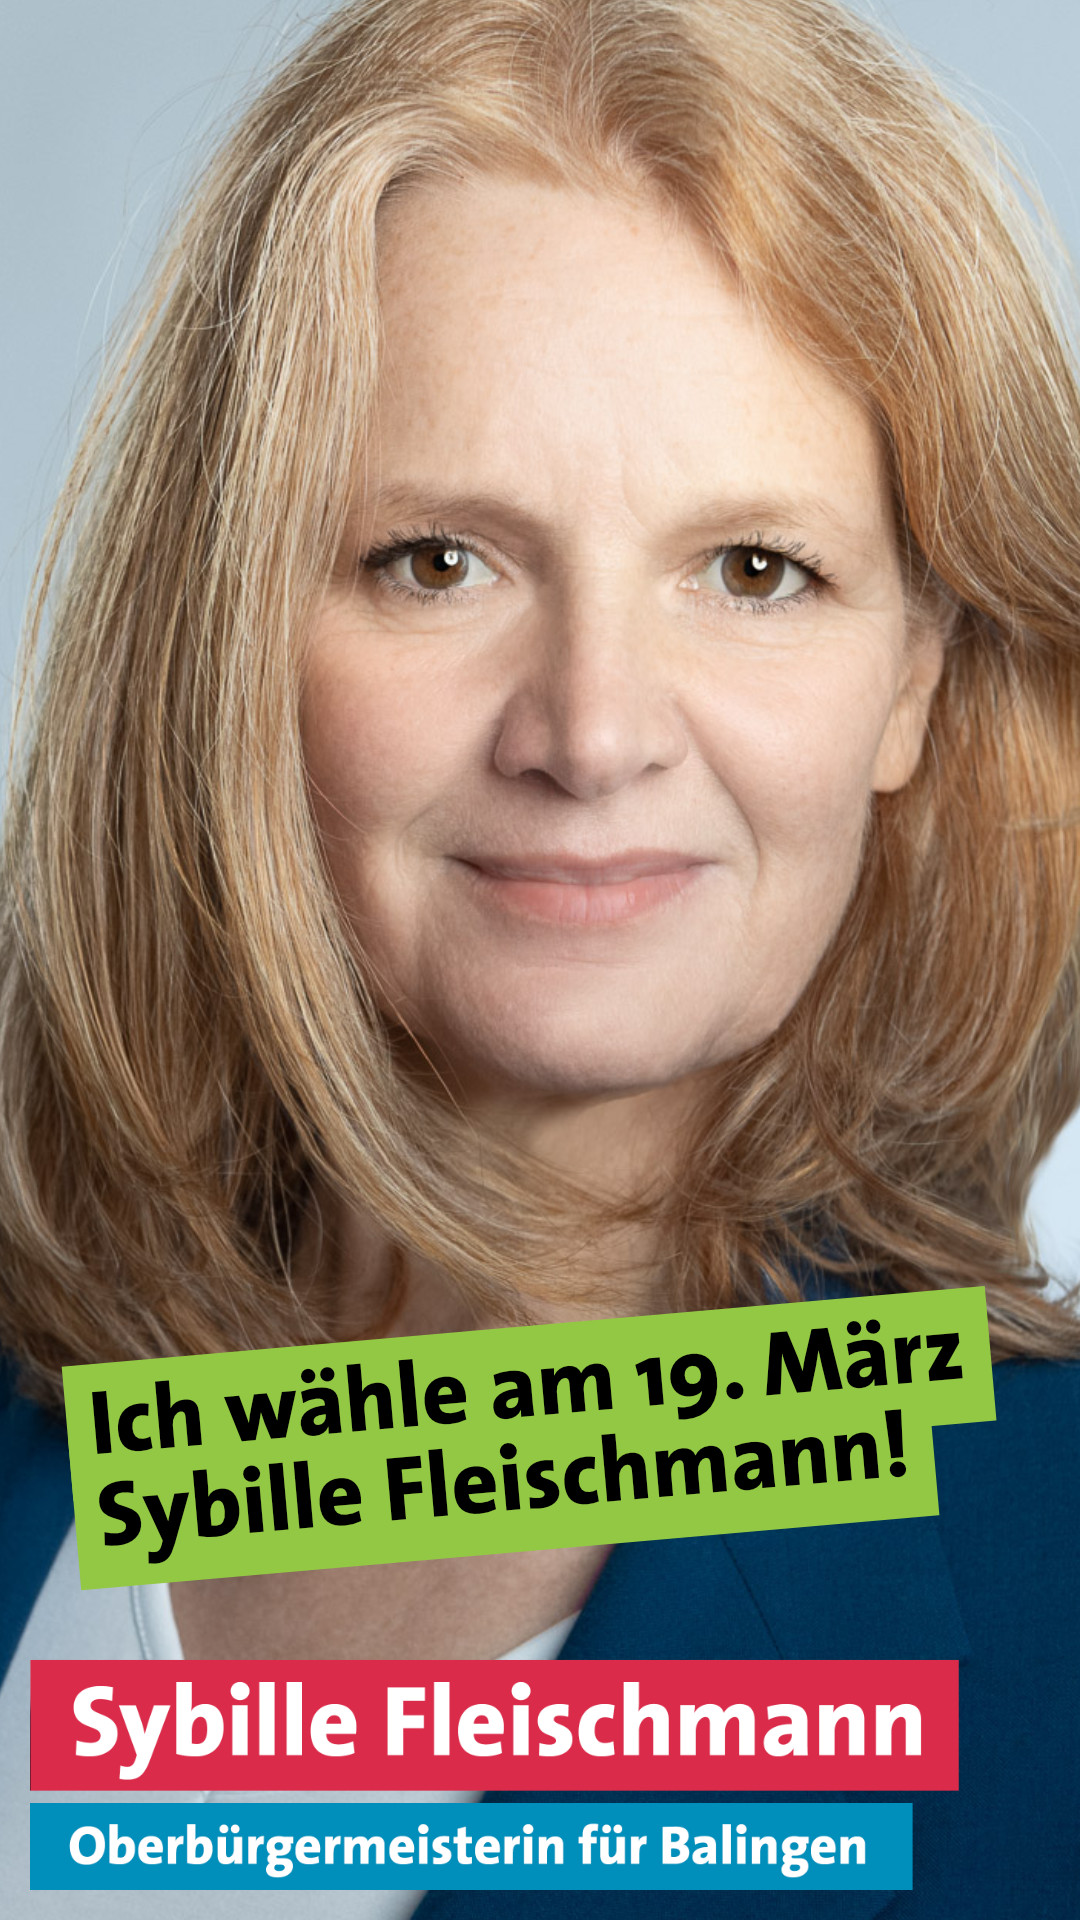 Ich wähle am 19. März Sybille Fleischmann!